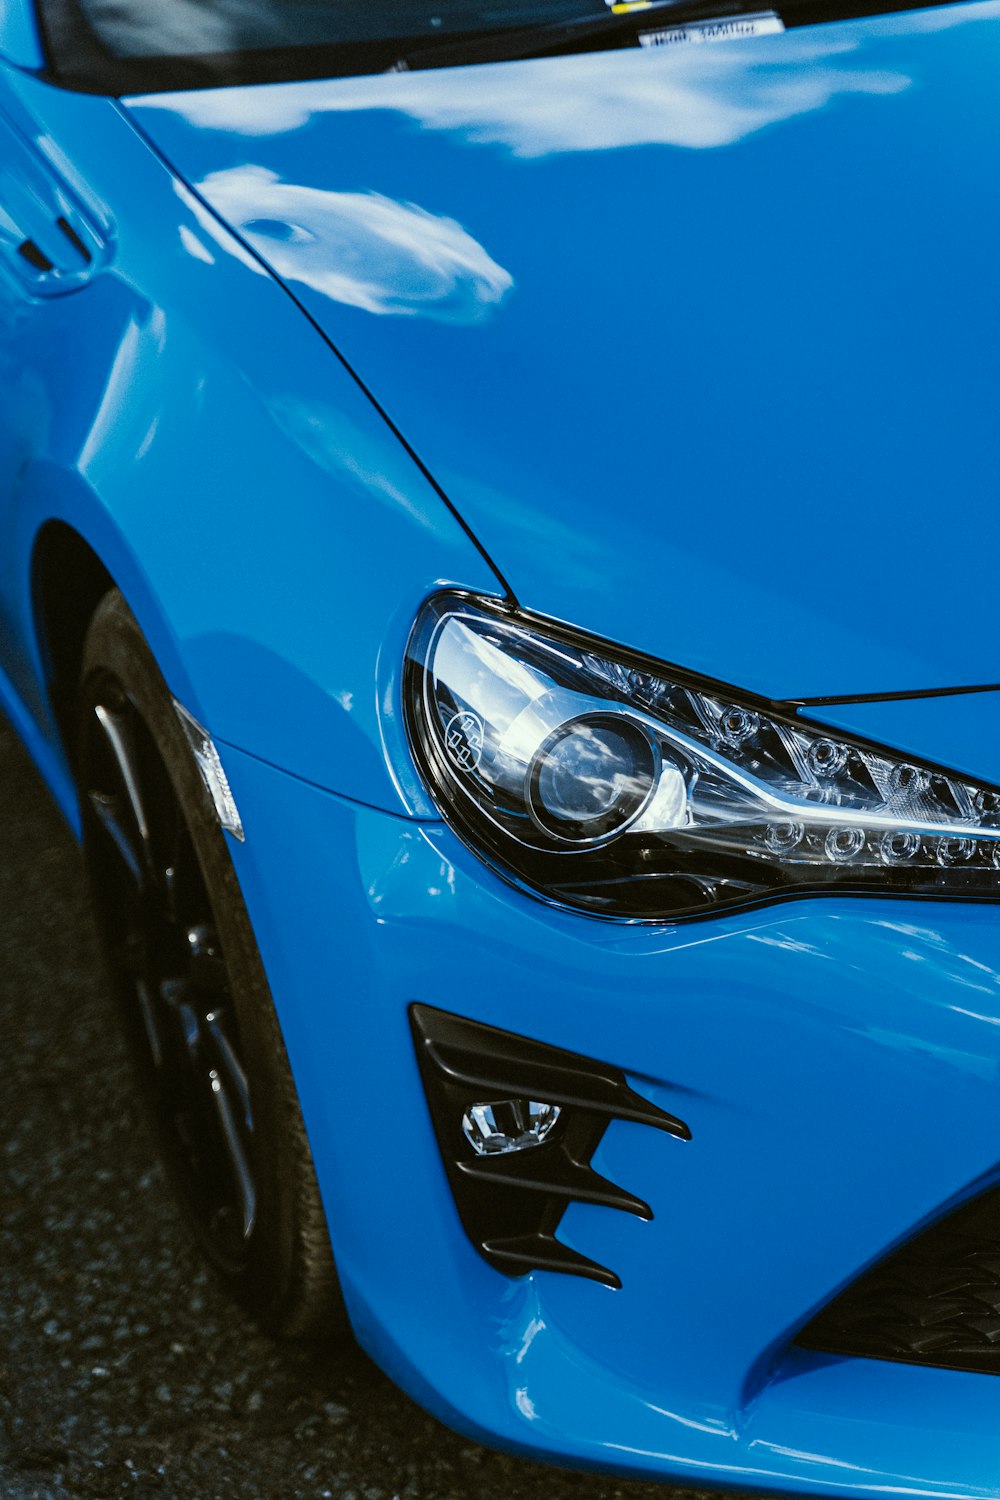 a close up of a blue sports car